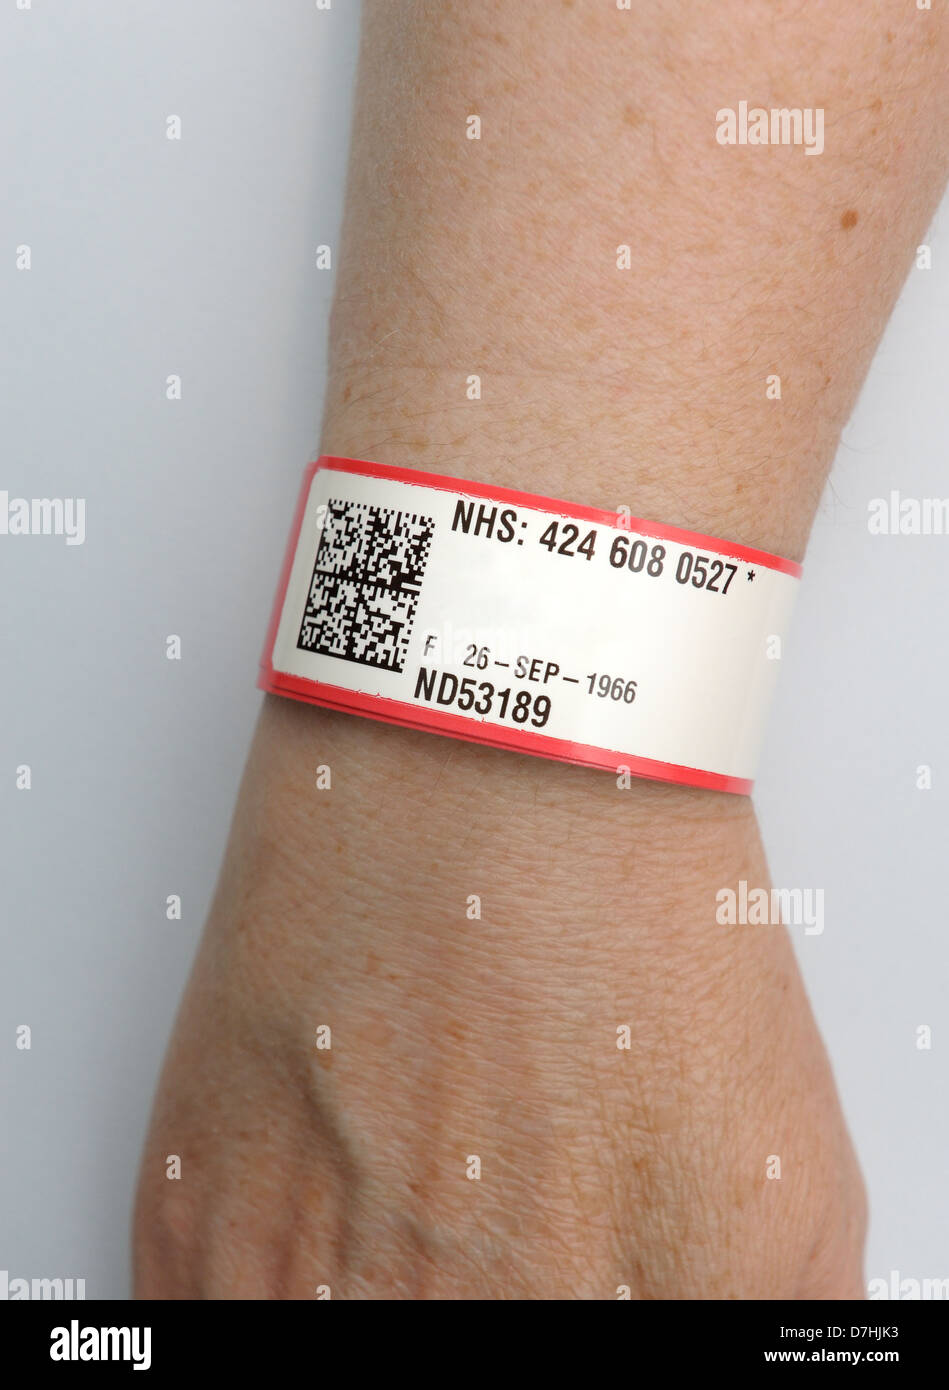 Bracelet identité patient NHS. La bande rouge indique une allergie à la  pénicilline. patients façon numérique supprimé Photo Stock - Alamy